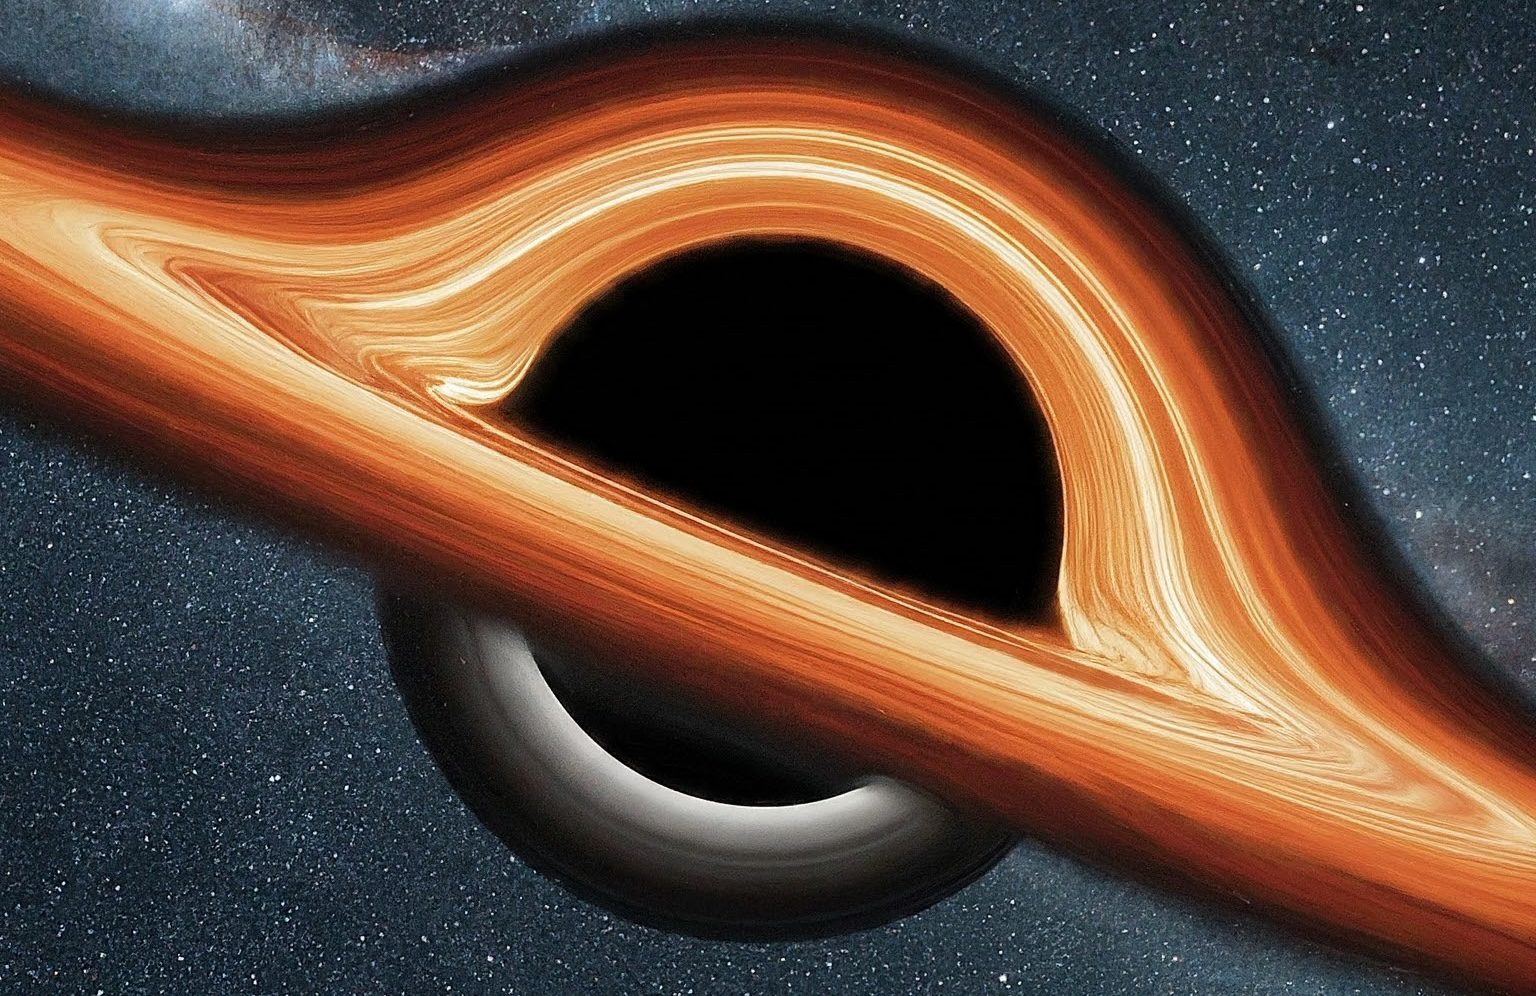 A blackhole in a blackhole?